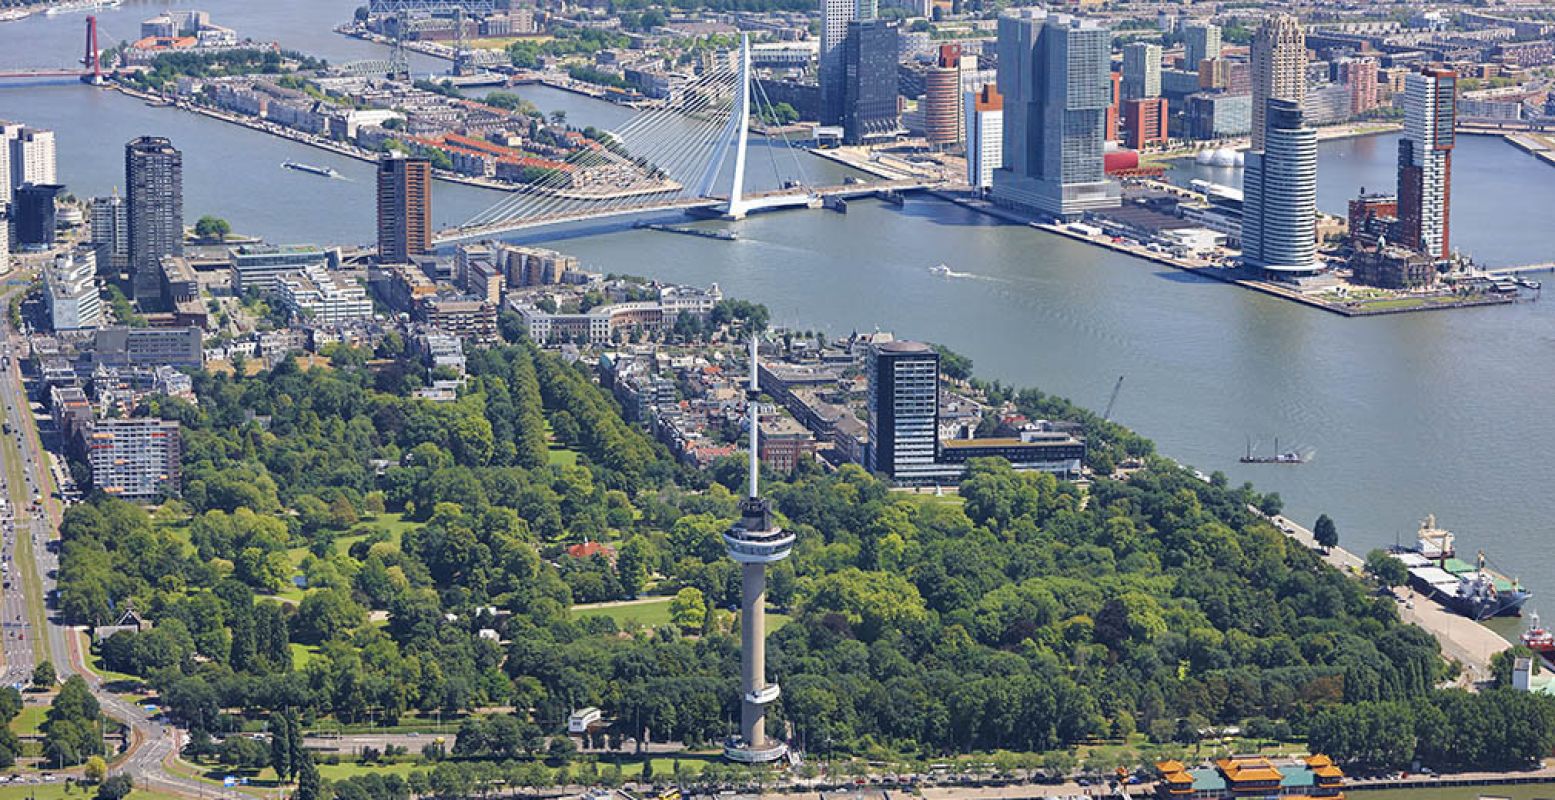 De skyline van Rotterdam is prachtig en nâg intenser wanneer je zelf in de lucht naast de Euromast hangt. Foto: Euromast.